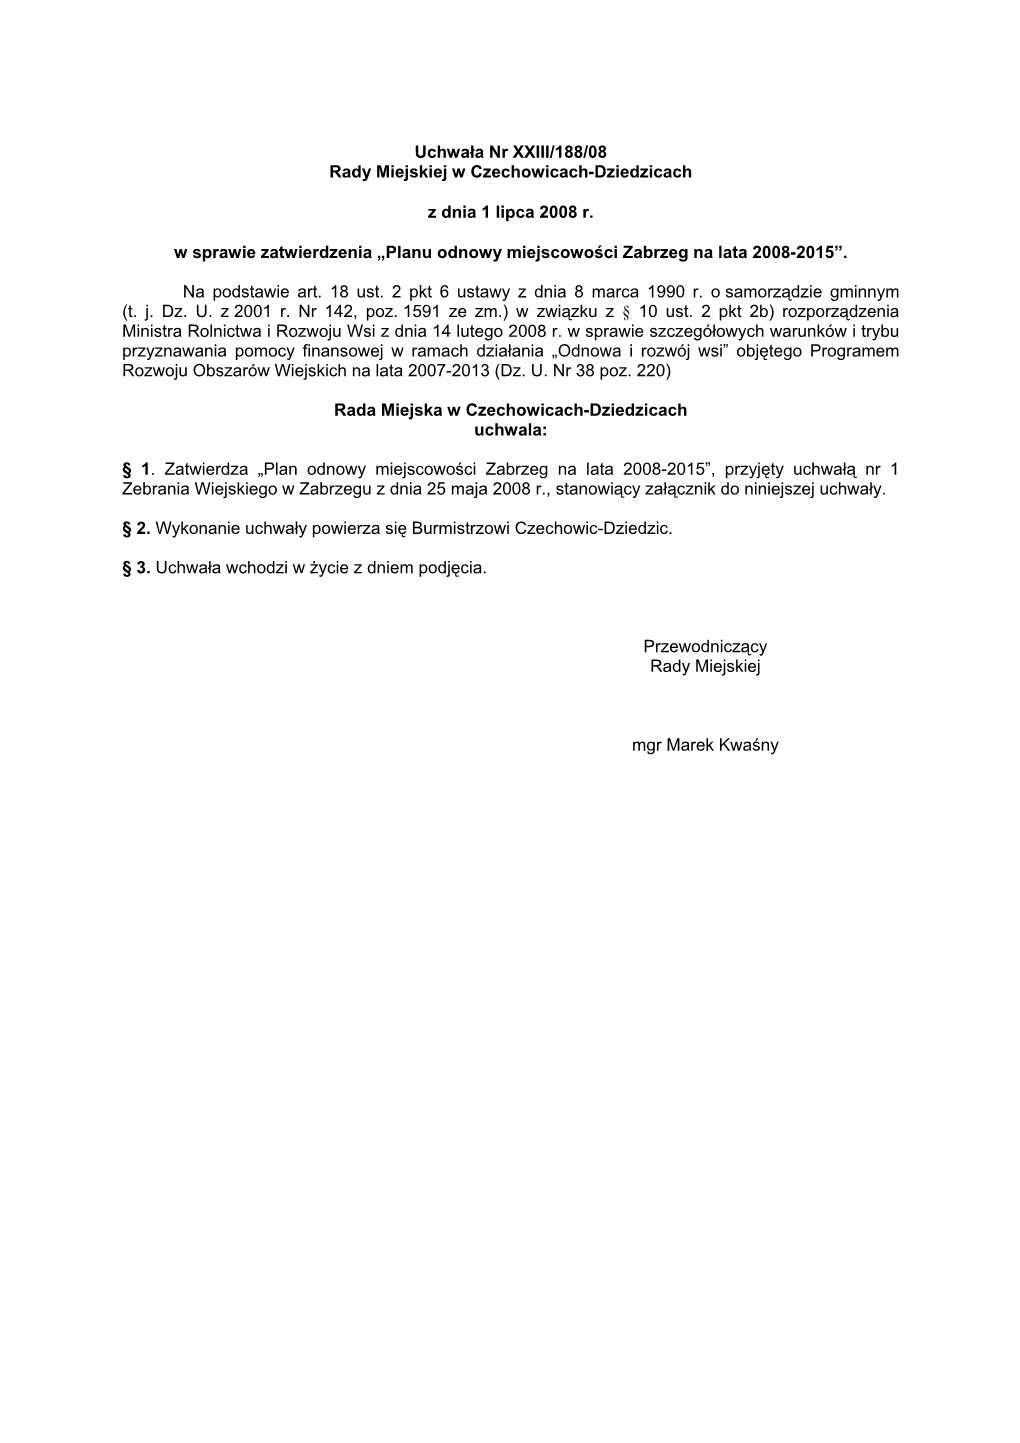 Uchwała Nr XXIII/188/08 Rady Miejskiej W Czechowicach-Dziedzicach Z Dnia 1 Lipca 2008 R. W Sprawie Zatwierdzenia „Planu Odnow